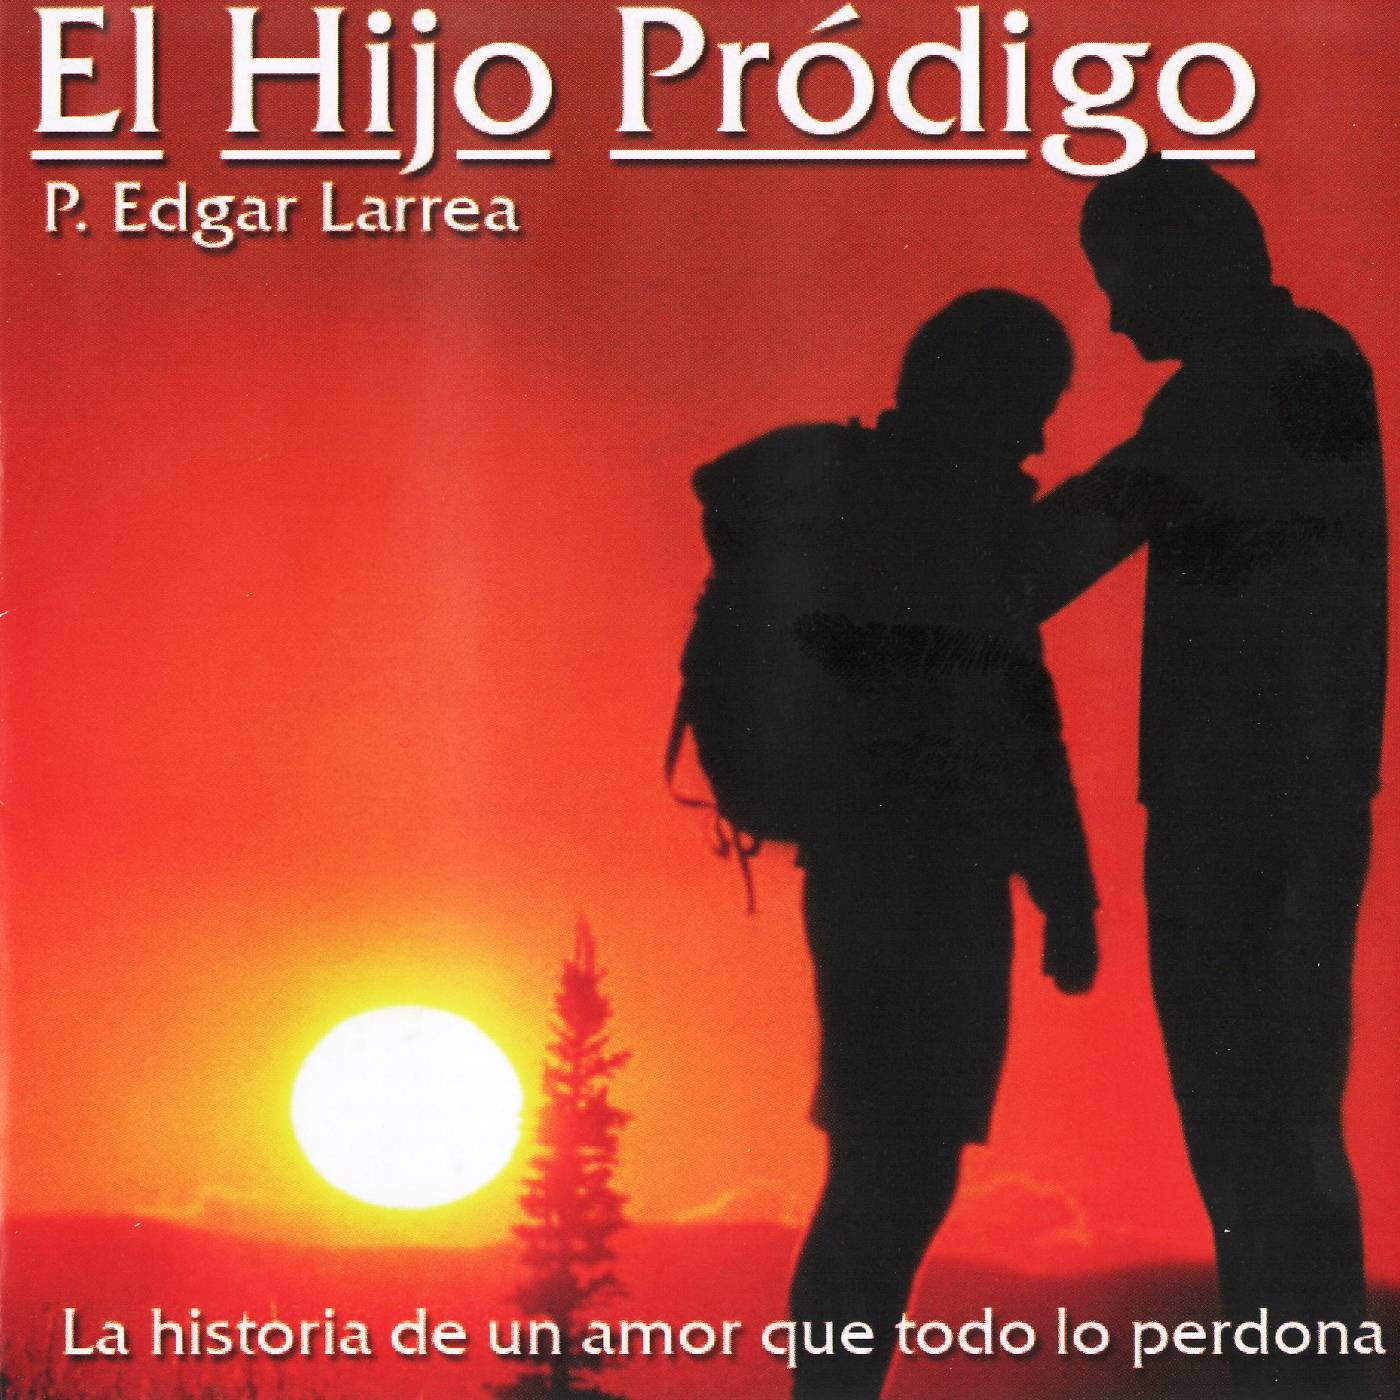 Padre Edgar Larrea: Discografia